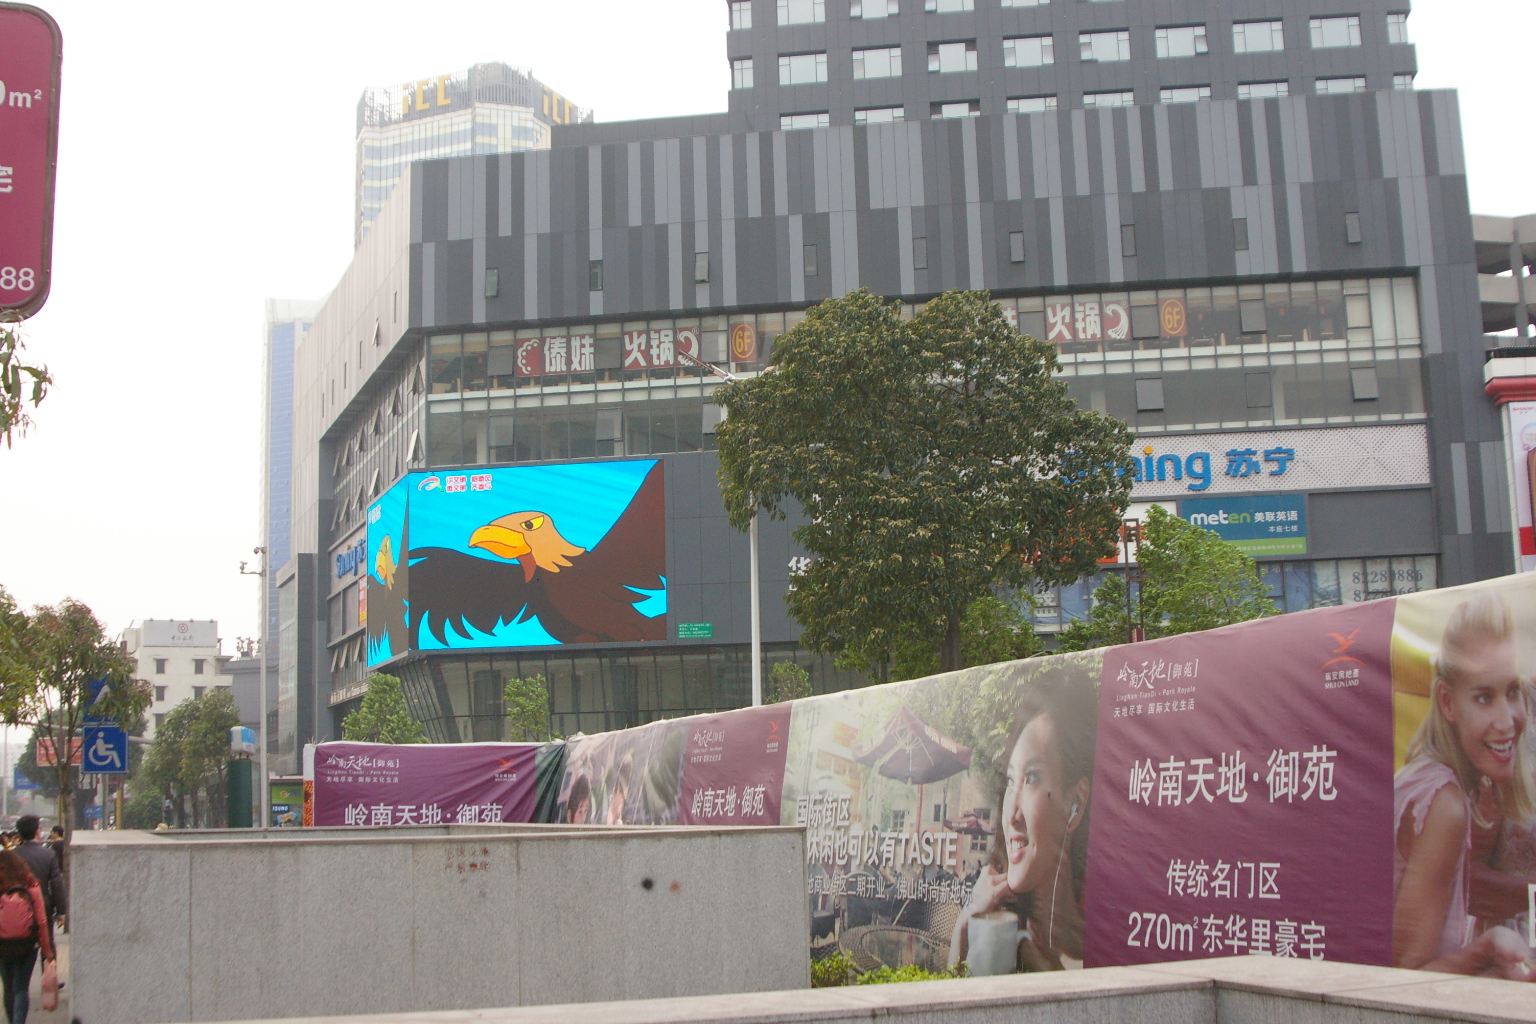 Zumiao Station in Foshan, Guangdong, China Mar 19,2014